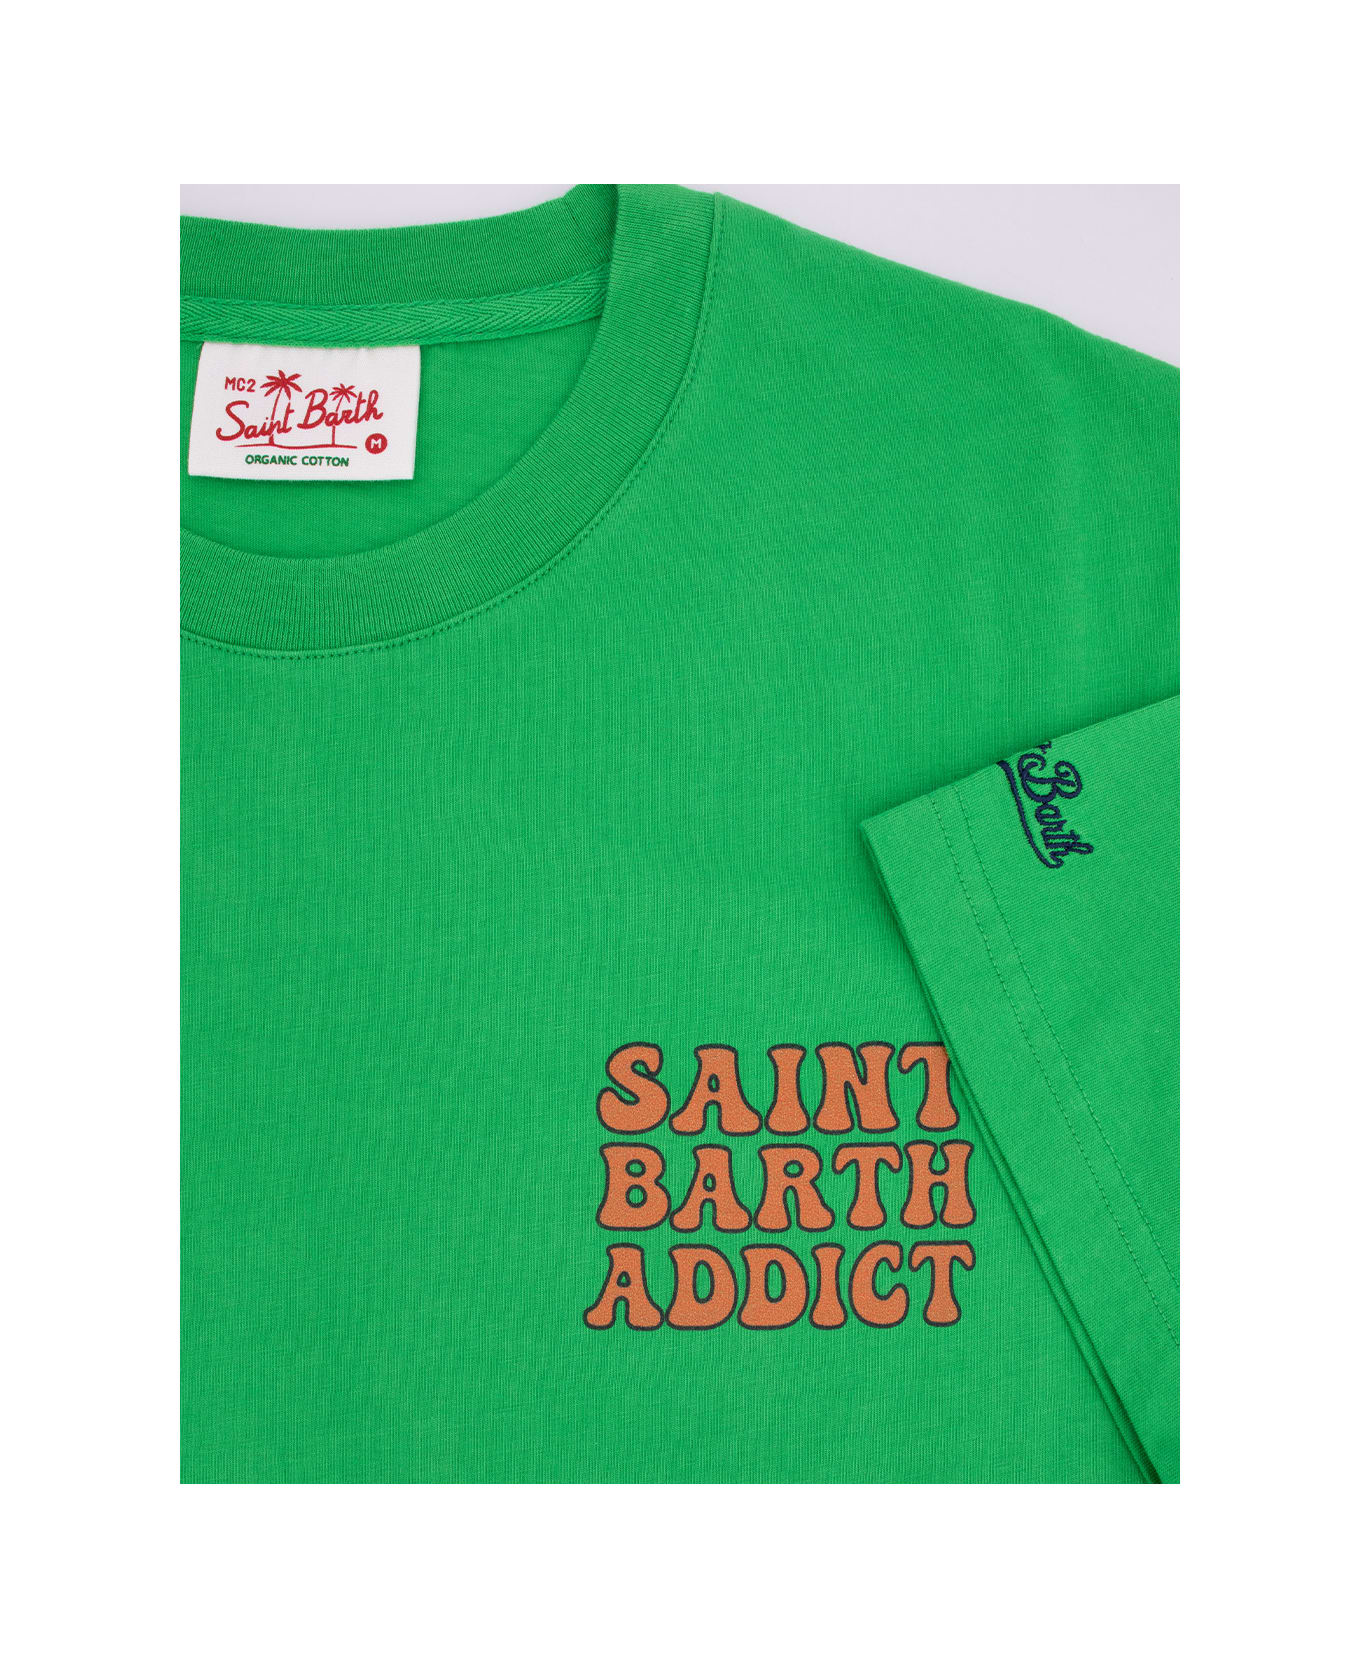 MC2 Saint Barth T-shirt - CUBA LIBRE RETRO 57